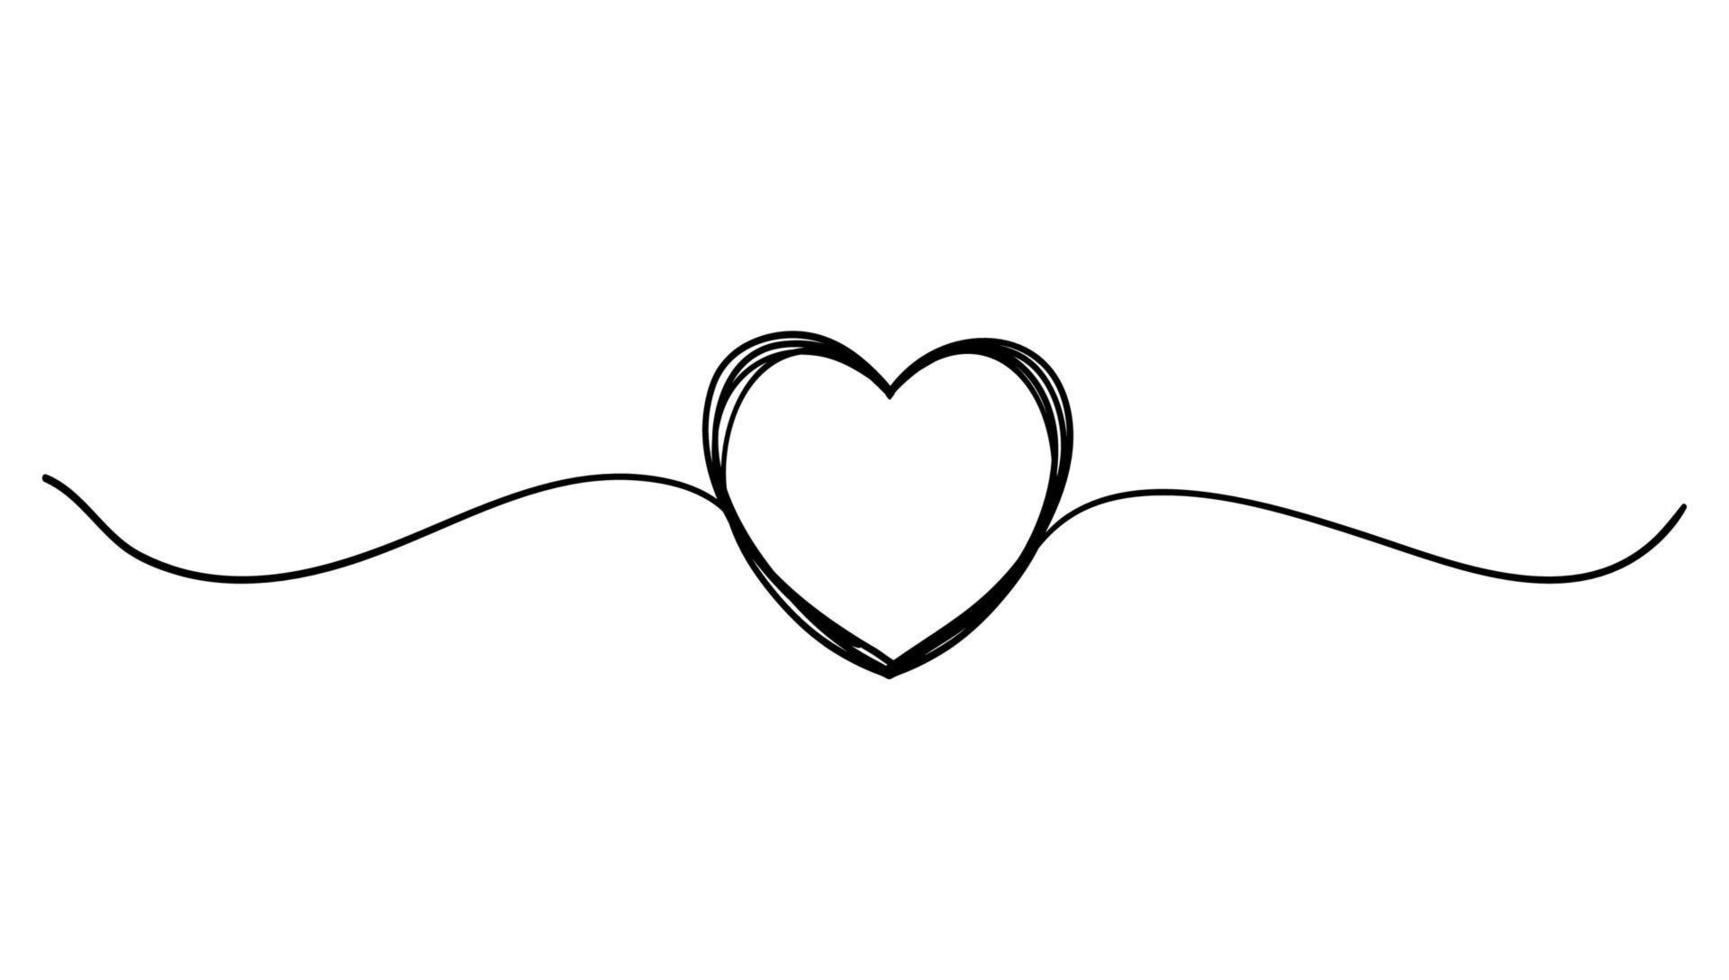 emmêlé grunge rond gribouillis coeur dessiné à la main avec une ligne mince, forme de diviseur. vecteur de style de ligne continue isolé